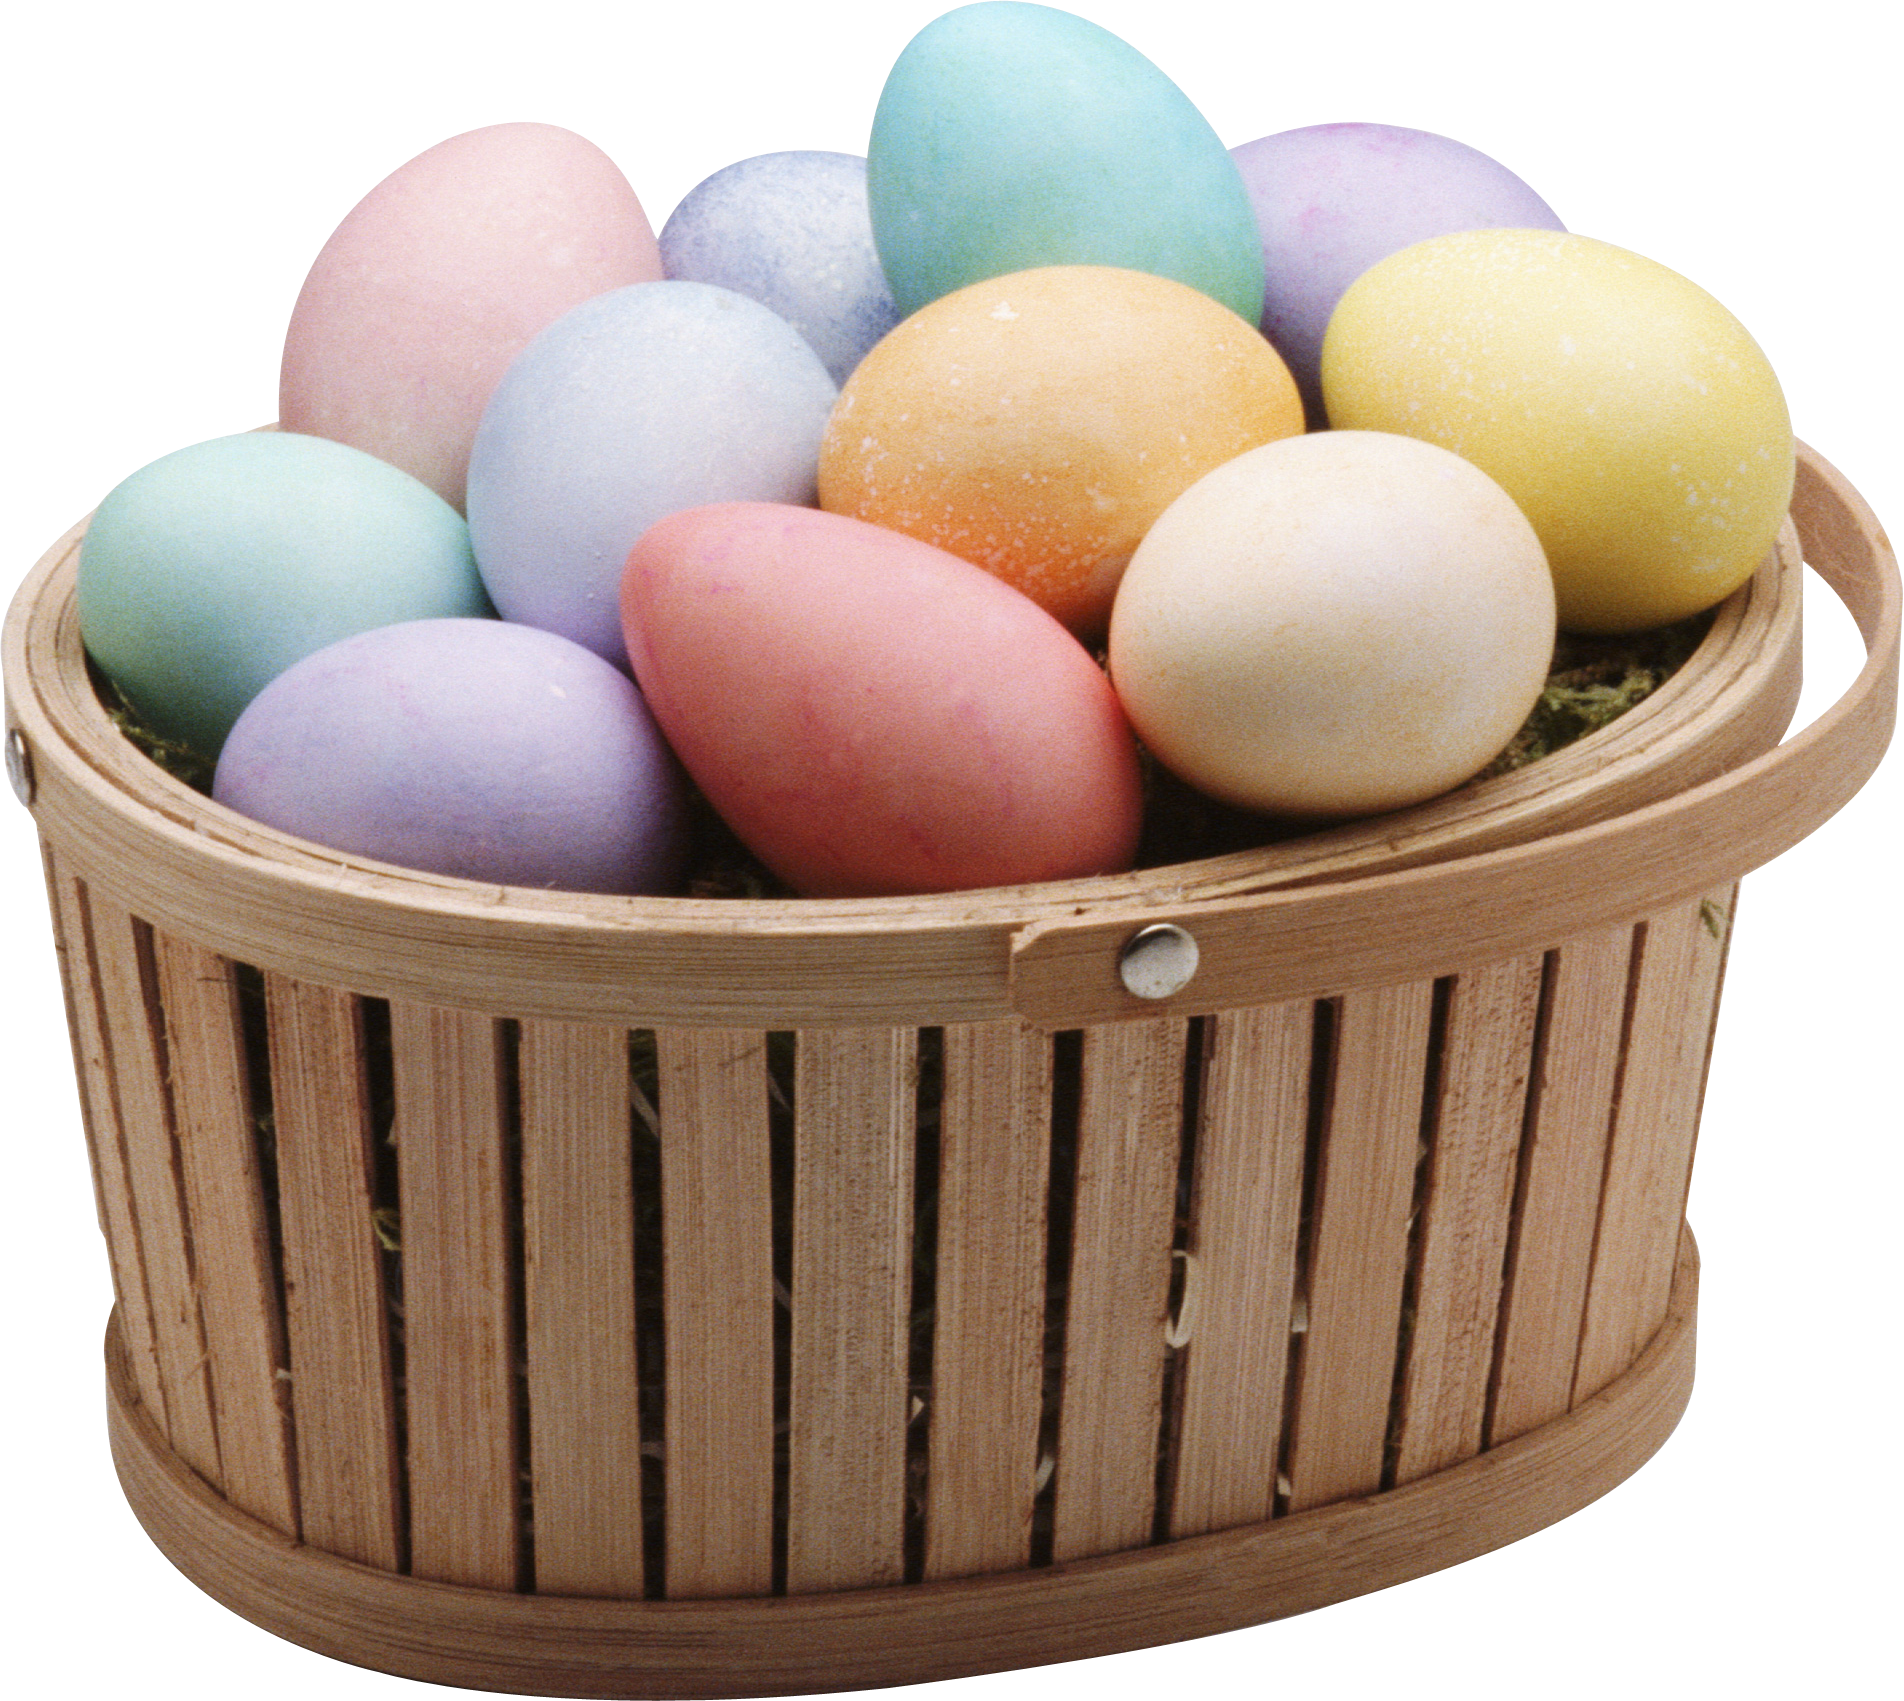 टोकरी में रंगीन अंडे